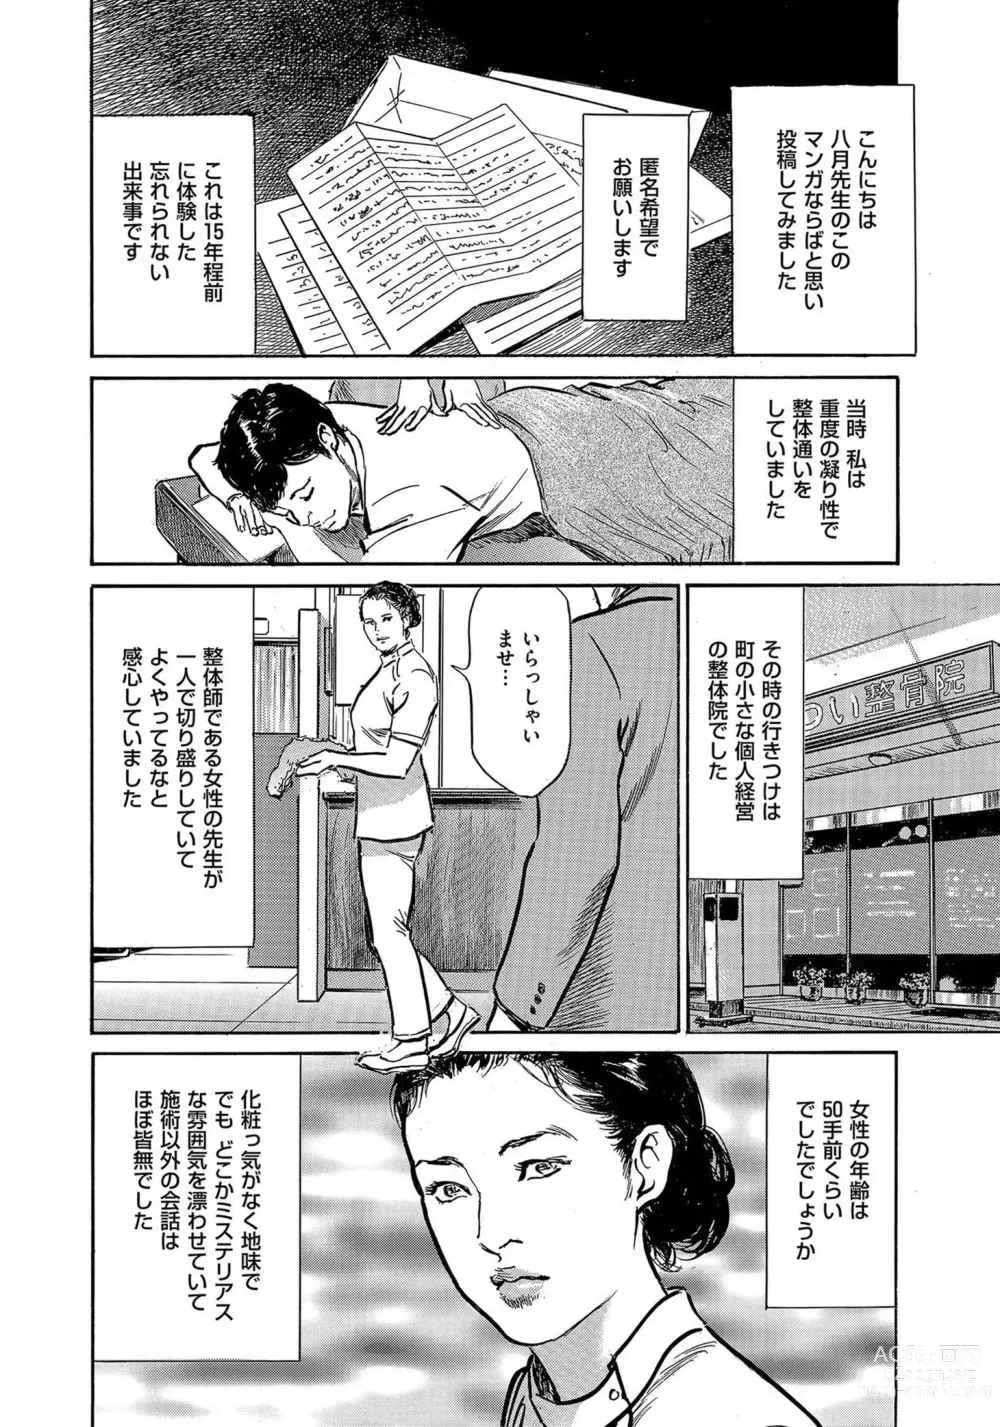 Page 3 of manga Saikou ni Toroketa Honki de Honto no Hanashi 16 episodes